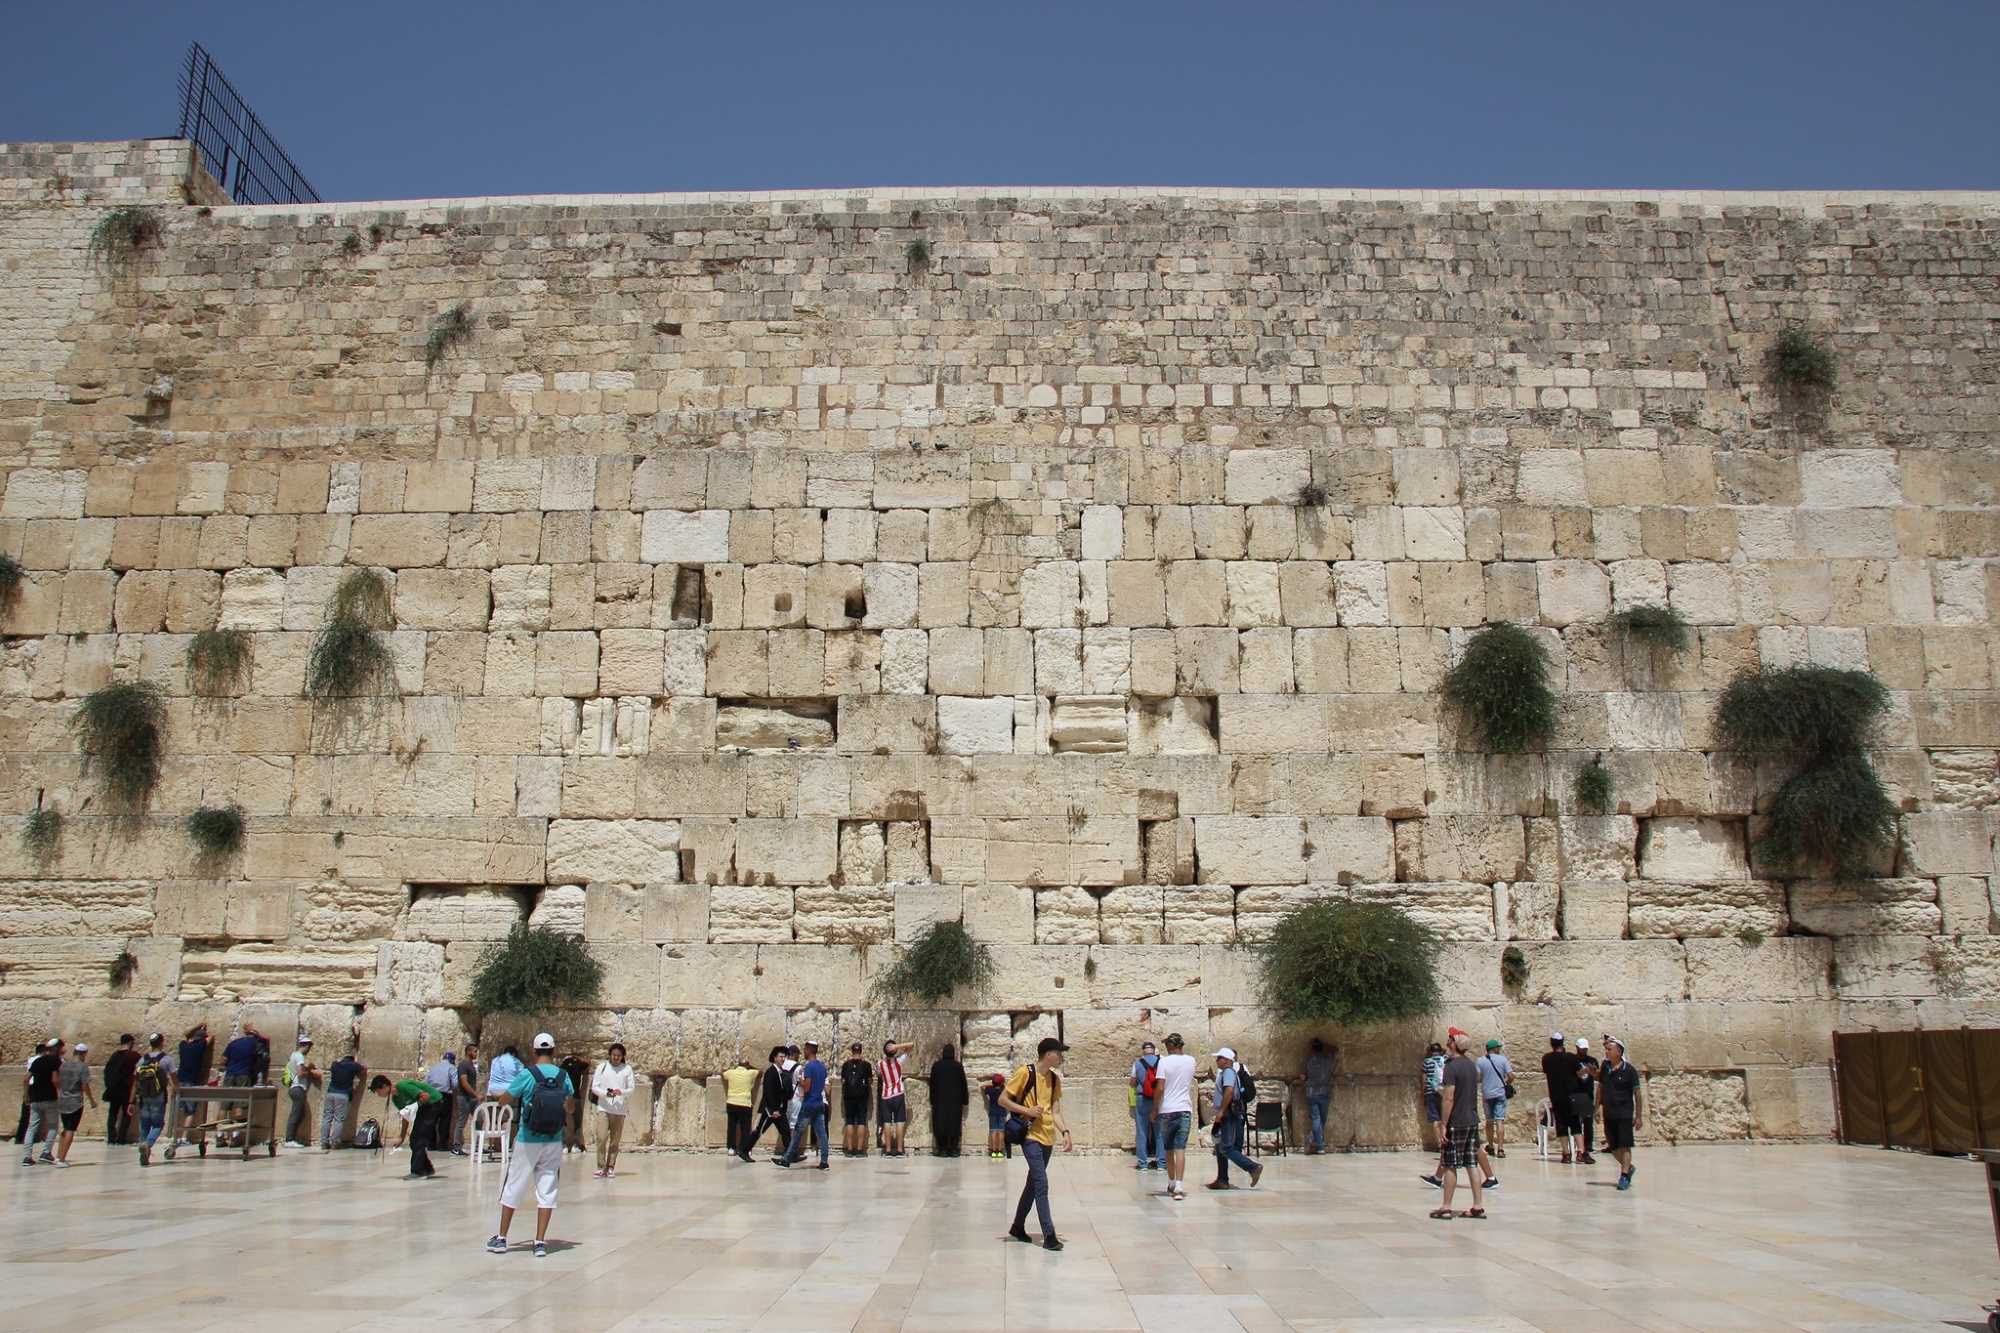 Jerusalem Old City Western Wall (Wailing Wall, Kotel, or Buraq Wall). Image: Gary Todd, via Flickr (public domain)